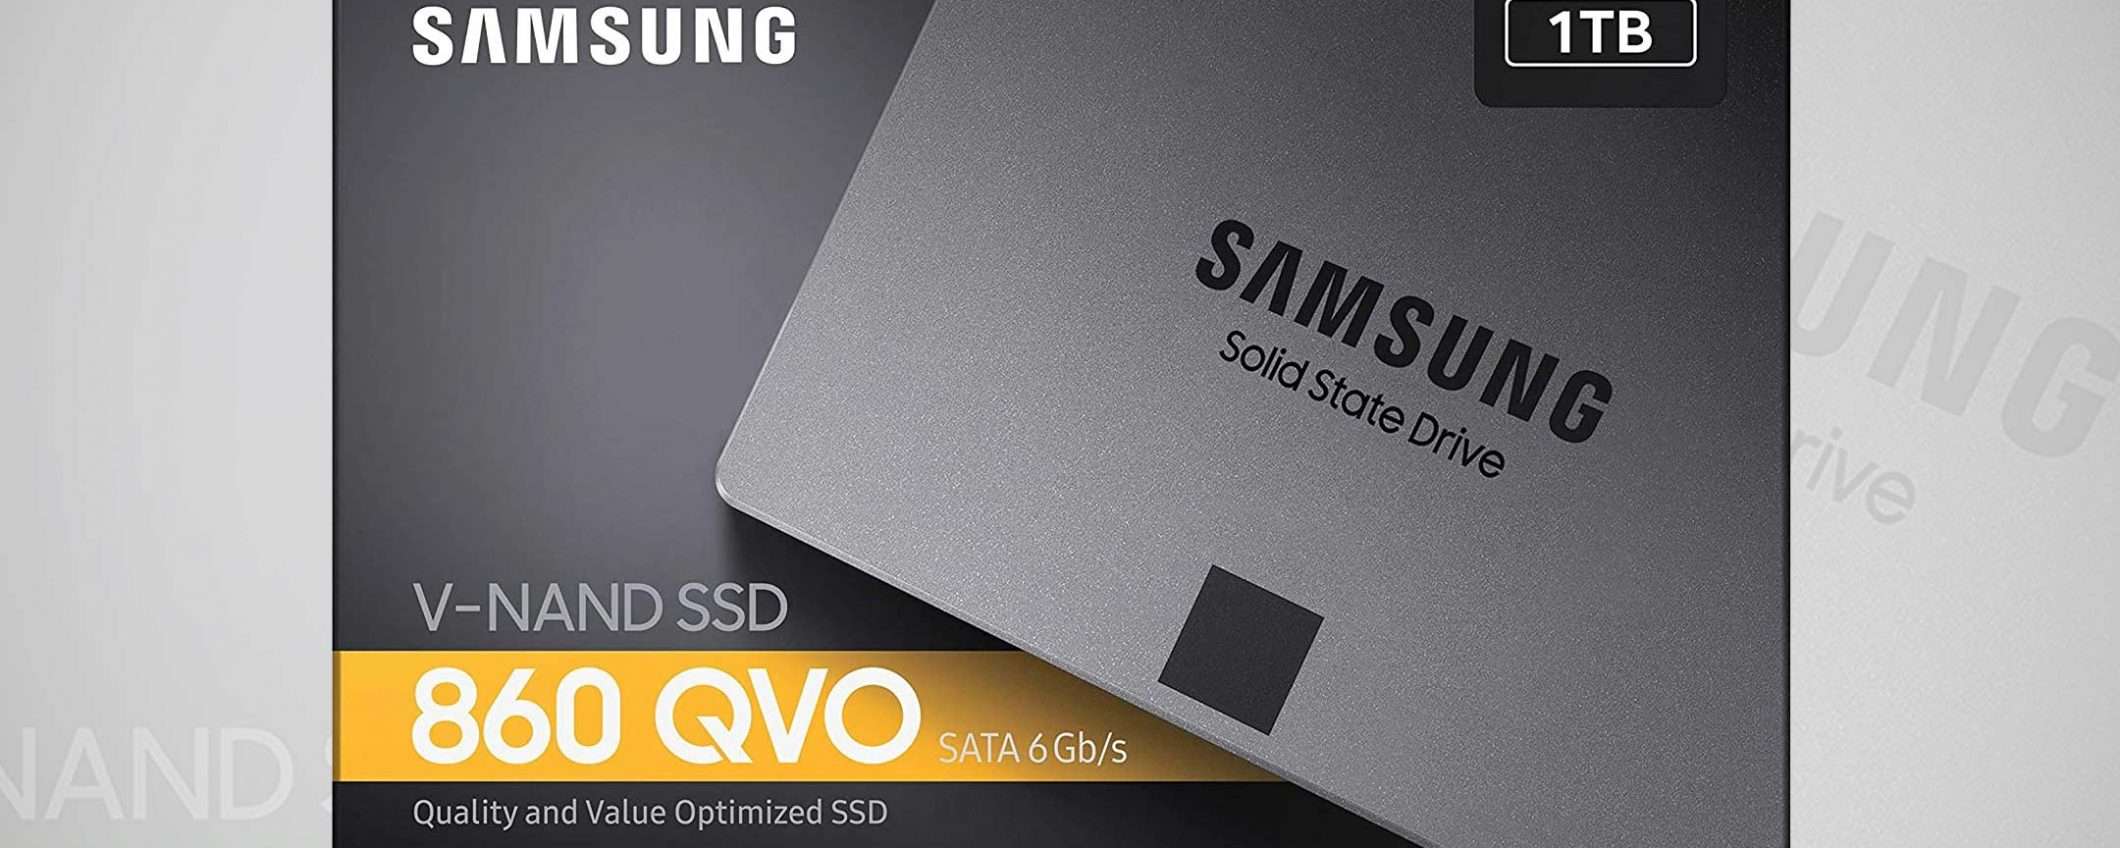 SSD Samsung 1 TB (860 QVO), sconto -38%: un affare